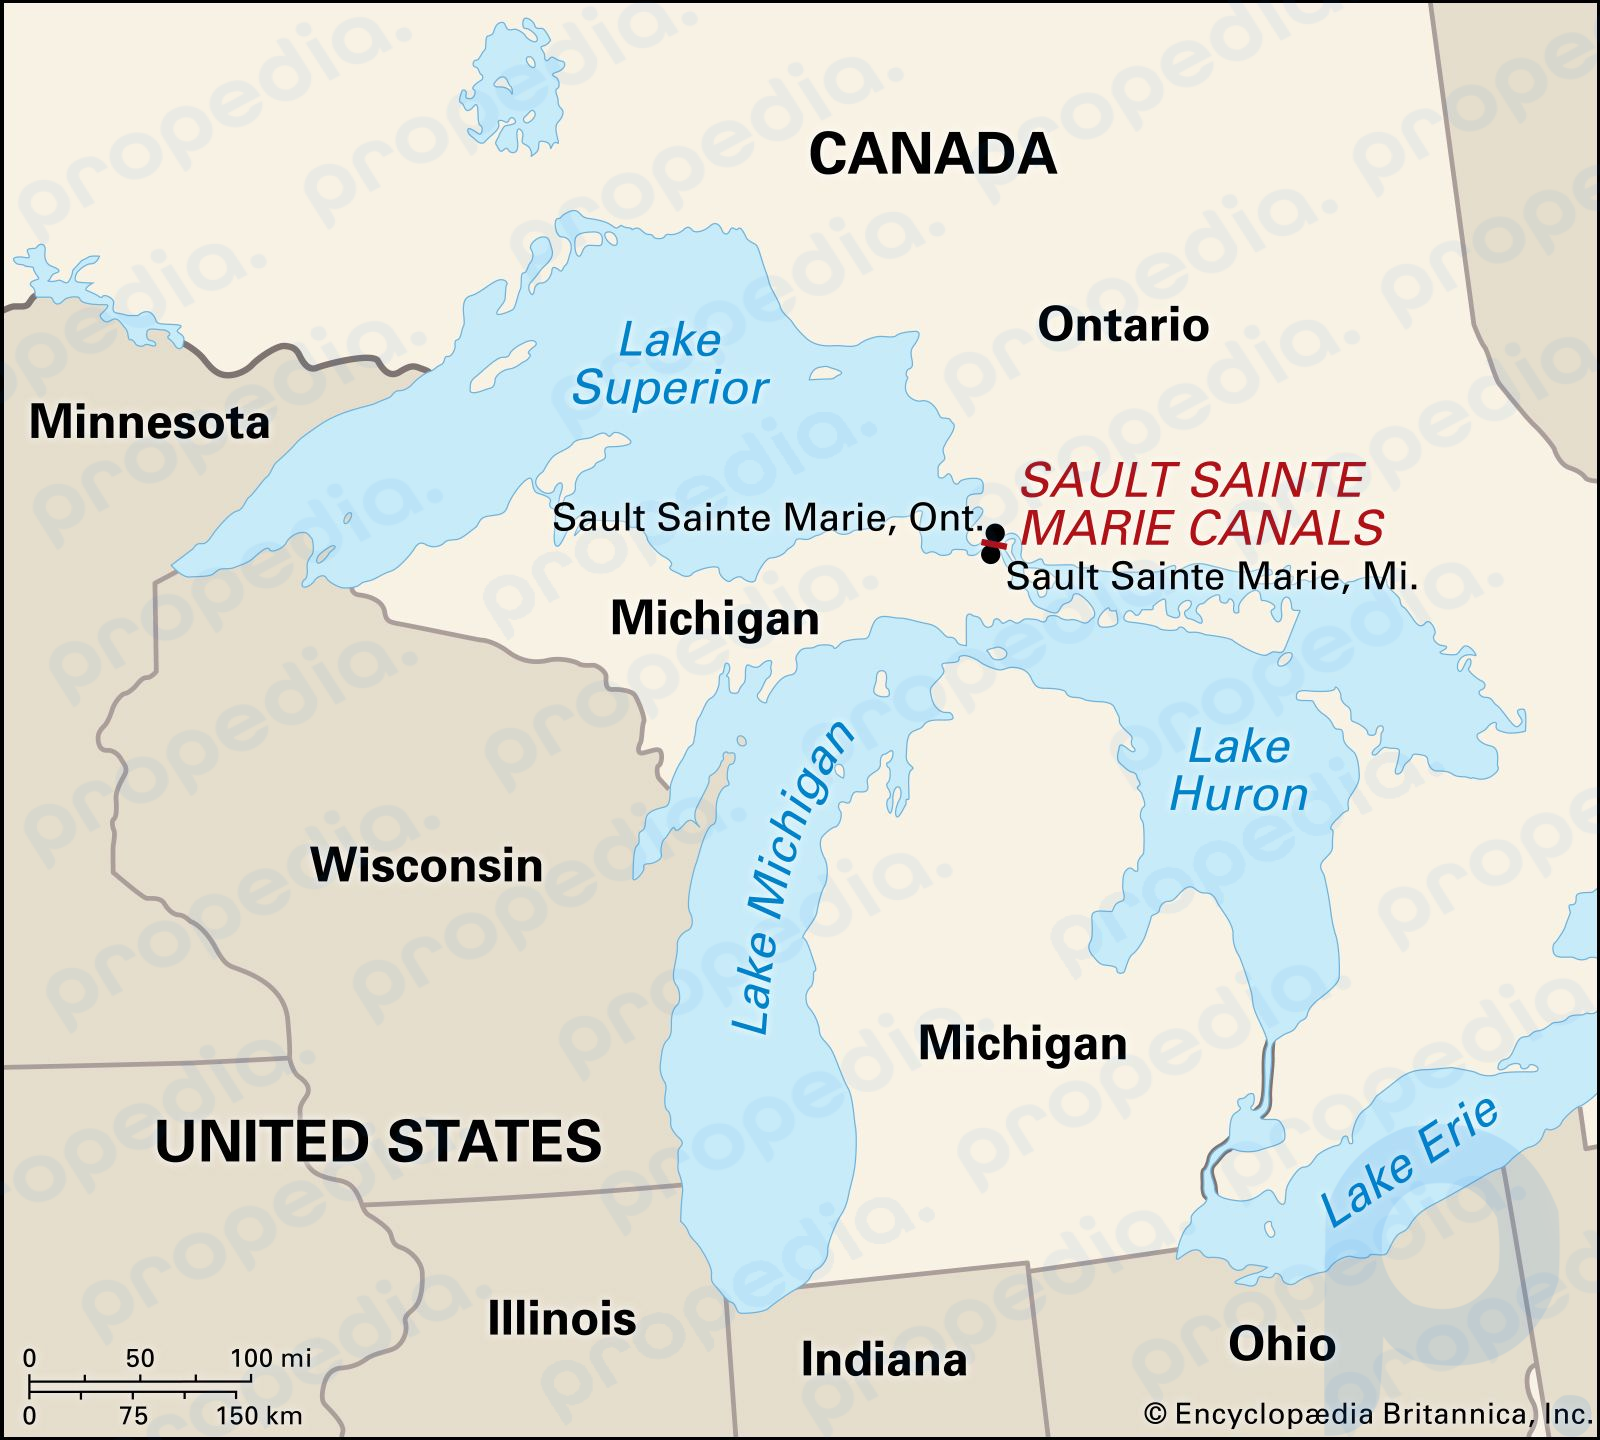 Sault Sainte Marie, Michigan, ubicada al otro lado del río St. Marys desde su ciudad hermana, Sault Sainte Marie, Ontario.